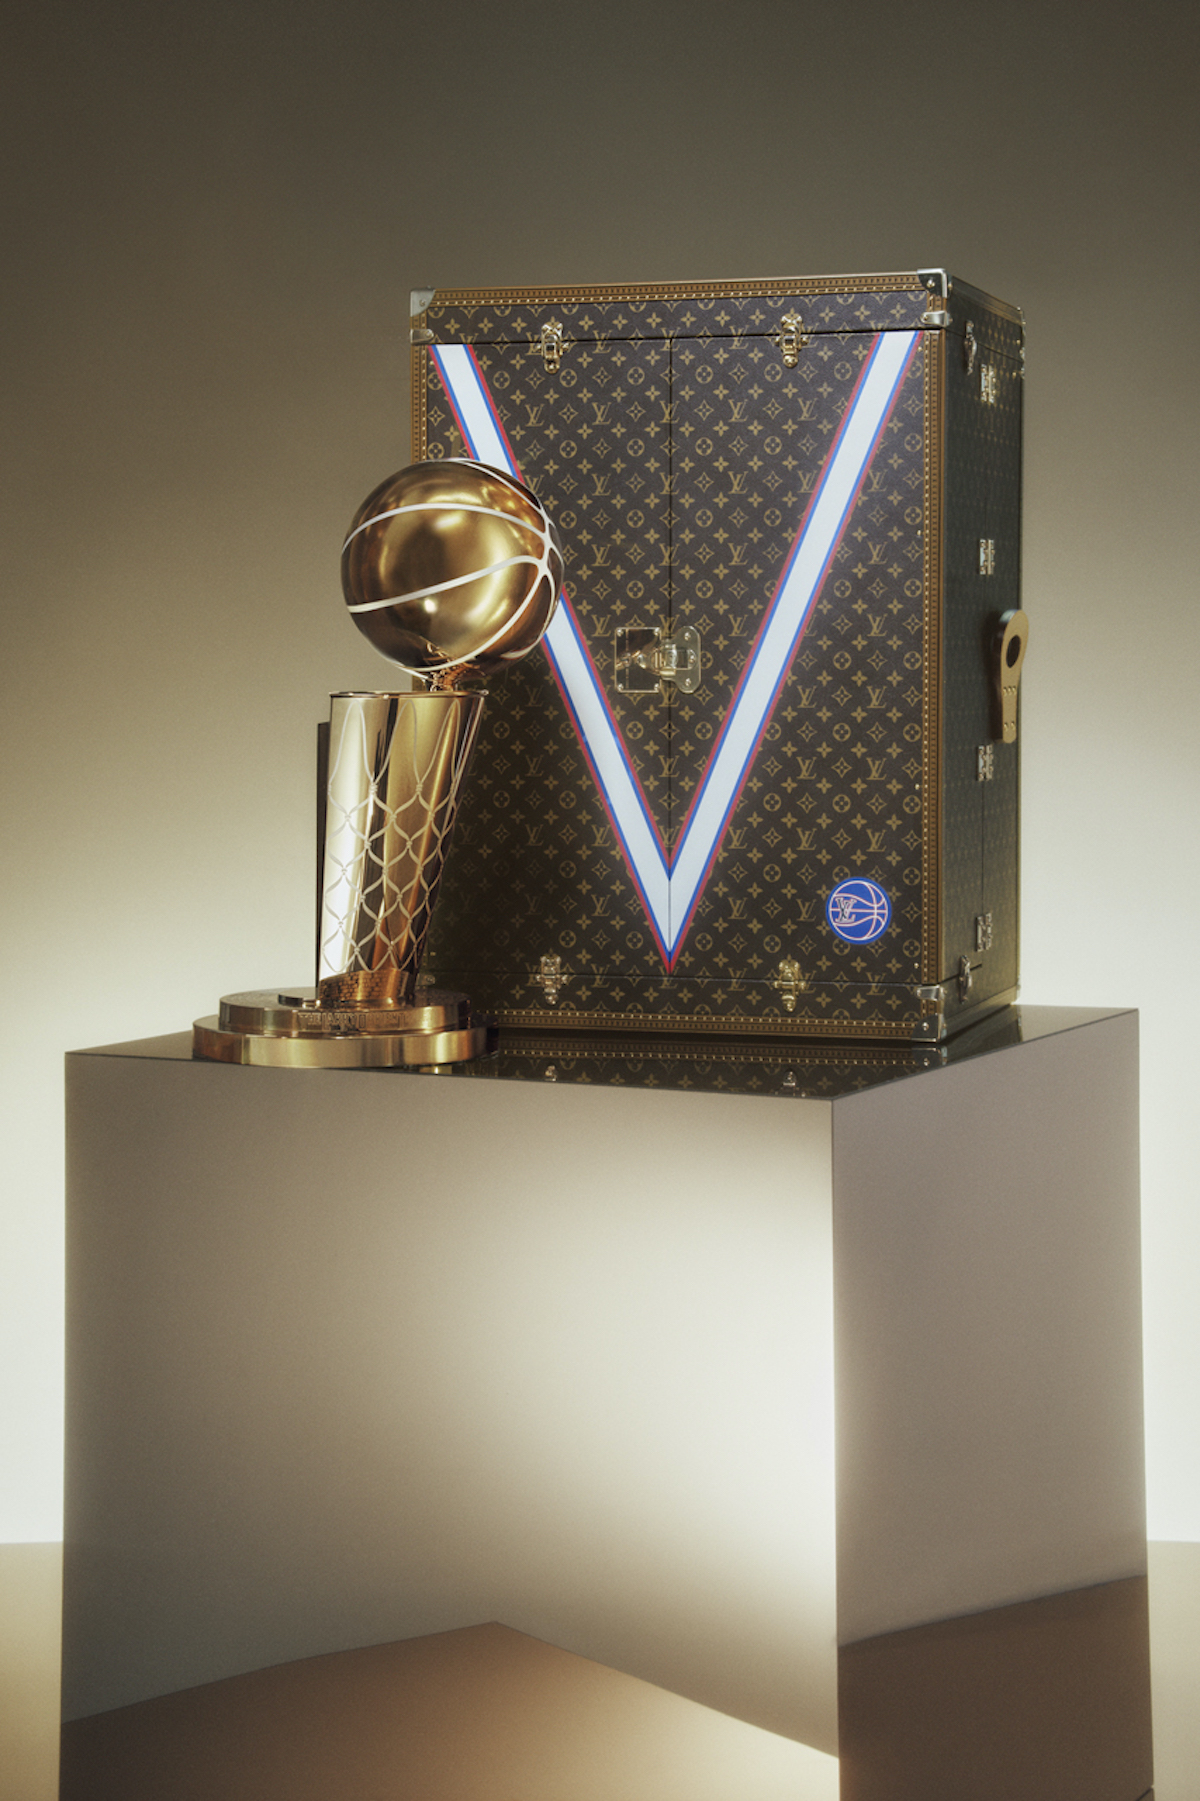 Release 2 Jun] Louis Vuitton x NBA Collection 2022